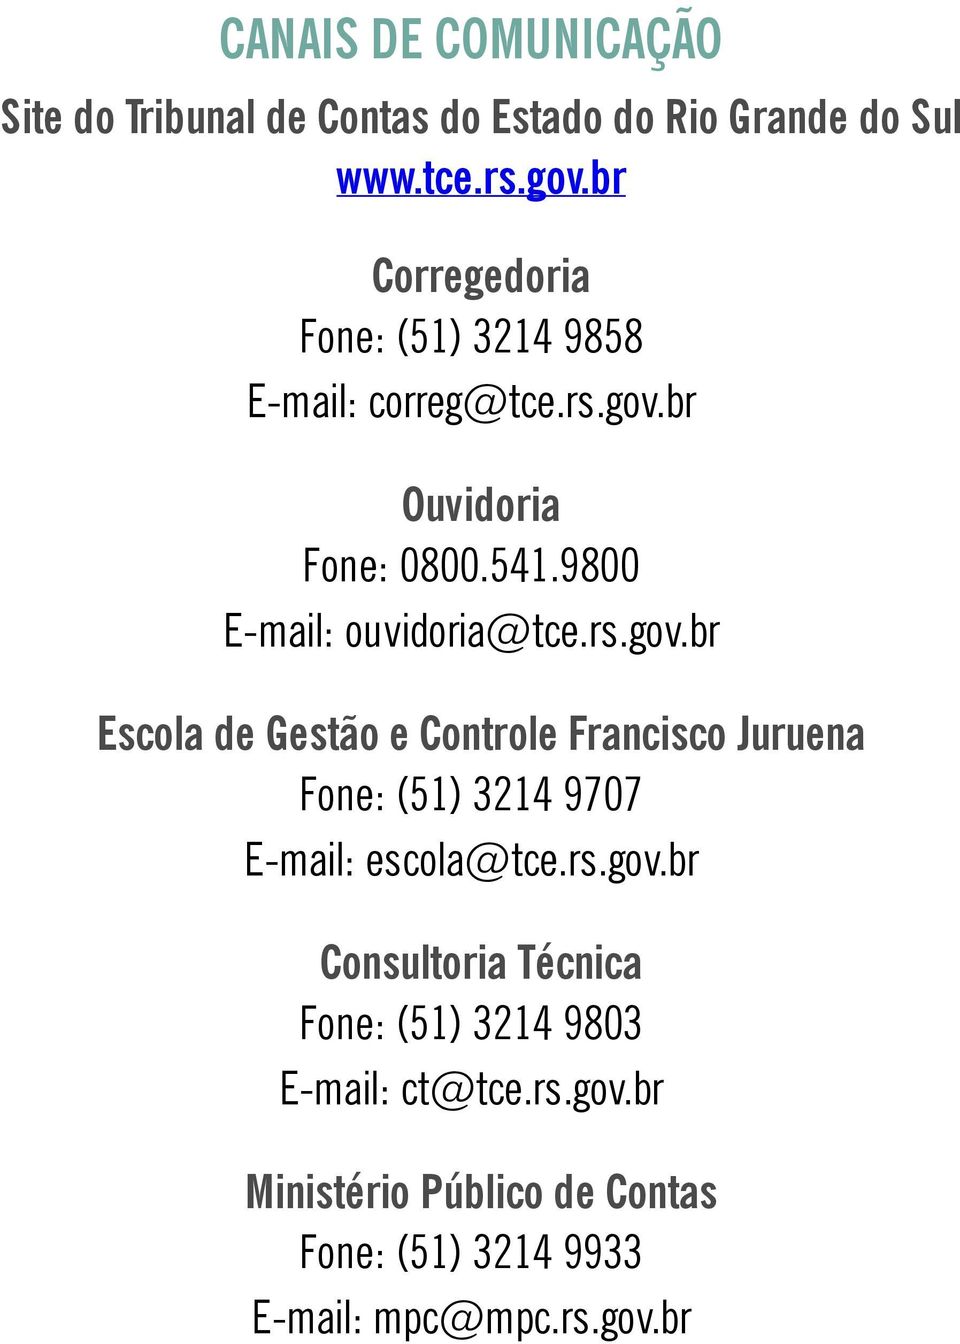 9800 E-mail: ouvidoria@tce.rs.gov.